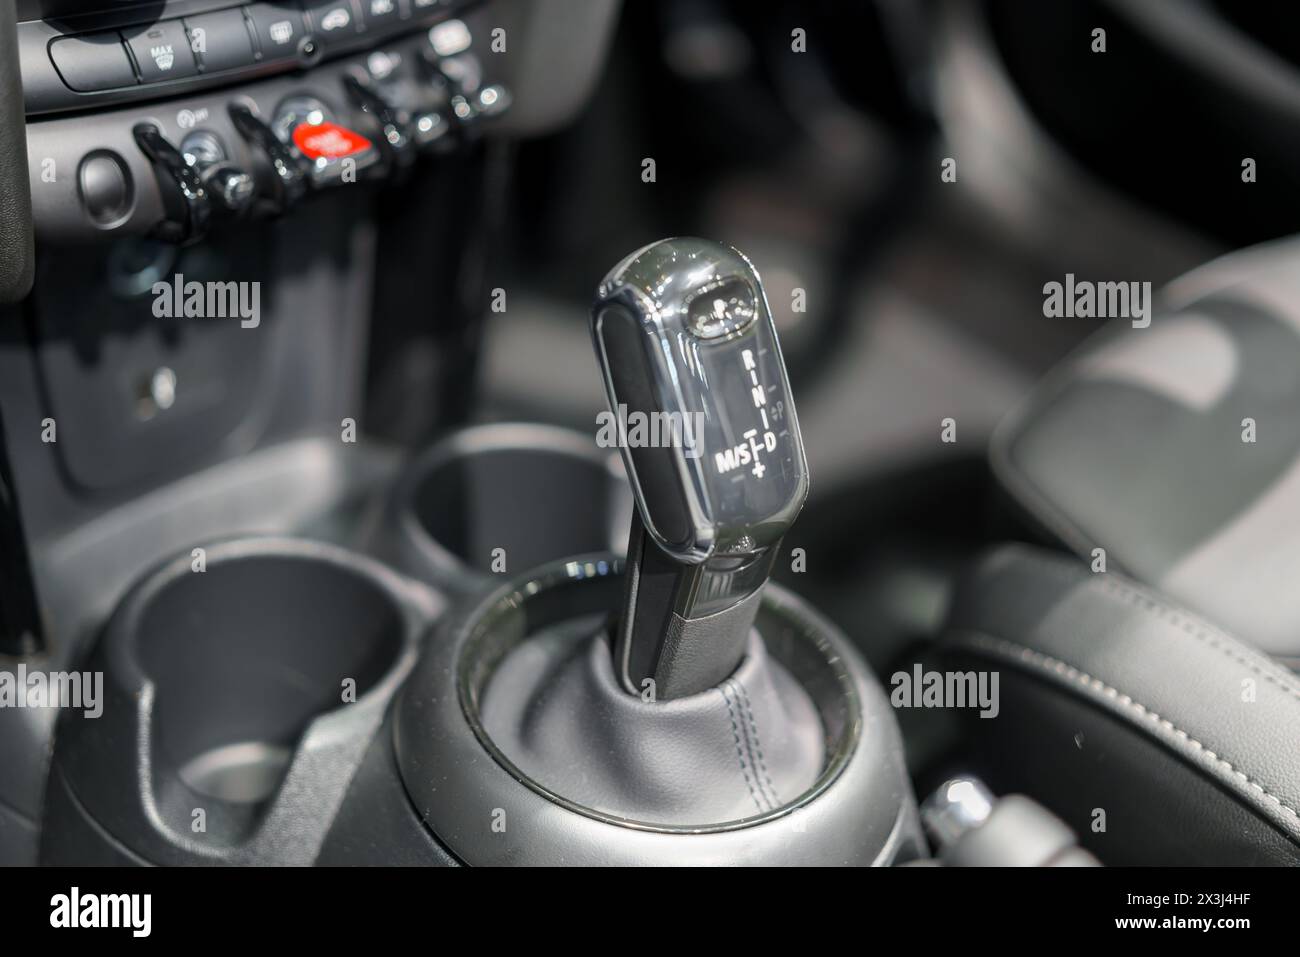 boîte de vitesses automatique et boutons de commande de la voiture moderne. Cette photo détaillée capture la précision de l'ingénierie et de la conception ergonomique, mettant en valeur l'intuiti Banque D'Images